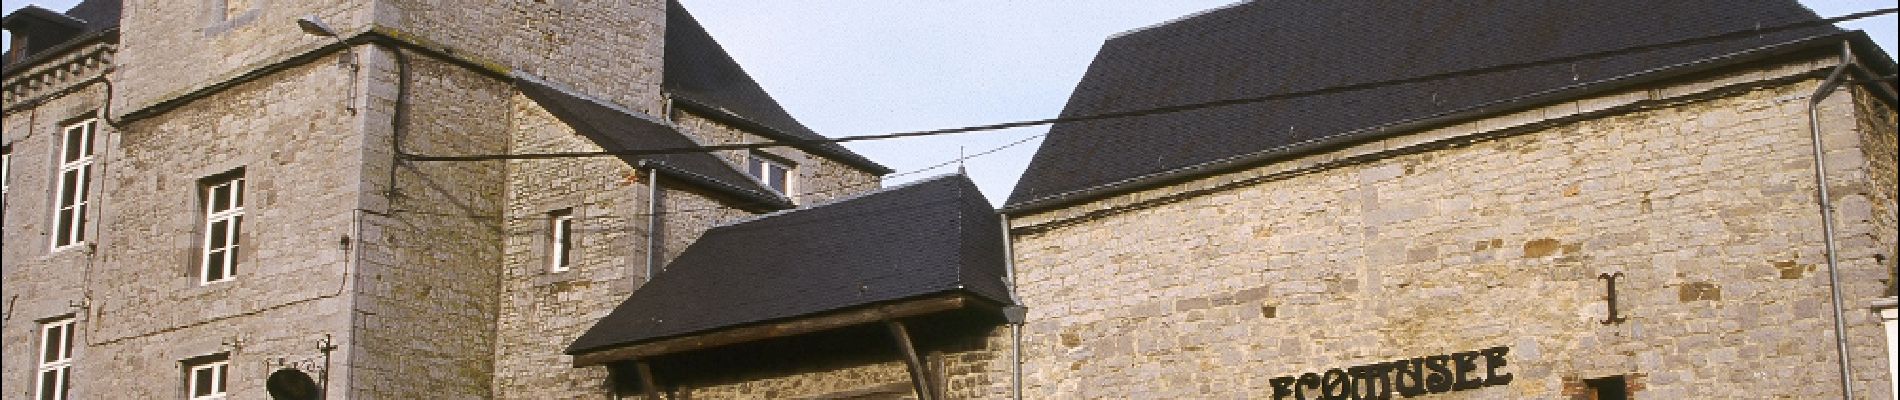 Punto de interés Viroinval - Ferme-château de Treignes (Treignes Castle-farm) (Eco-museum)  - Photo